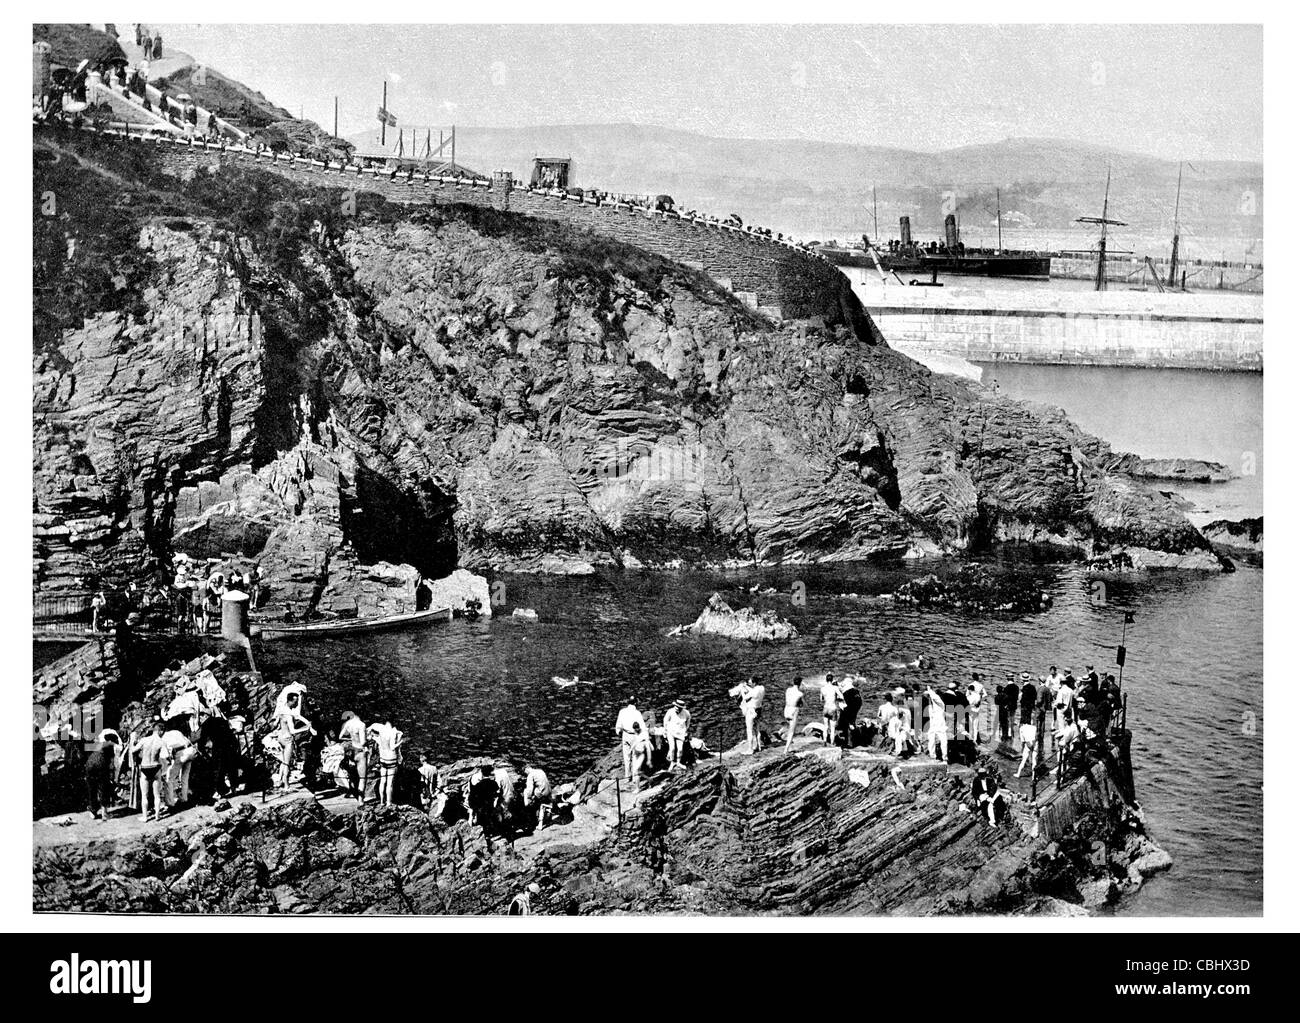 Hafen Skillion Douglas Isle Of Man Bucht Hafen Hafen am Strand Strand Dampfer Dampfschiff Versand Stockfoto